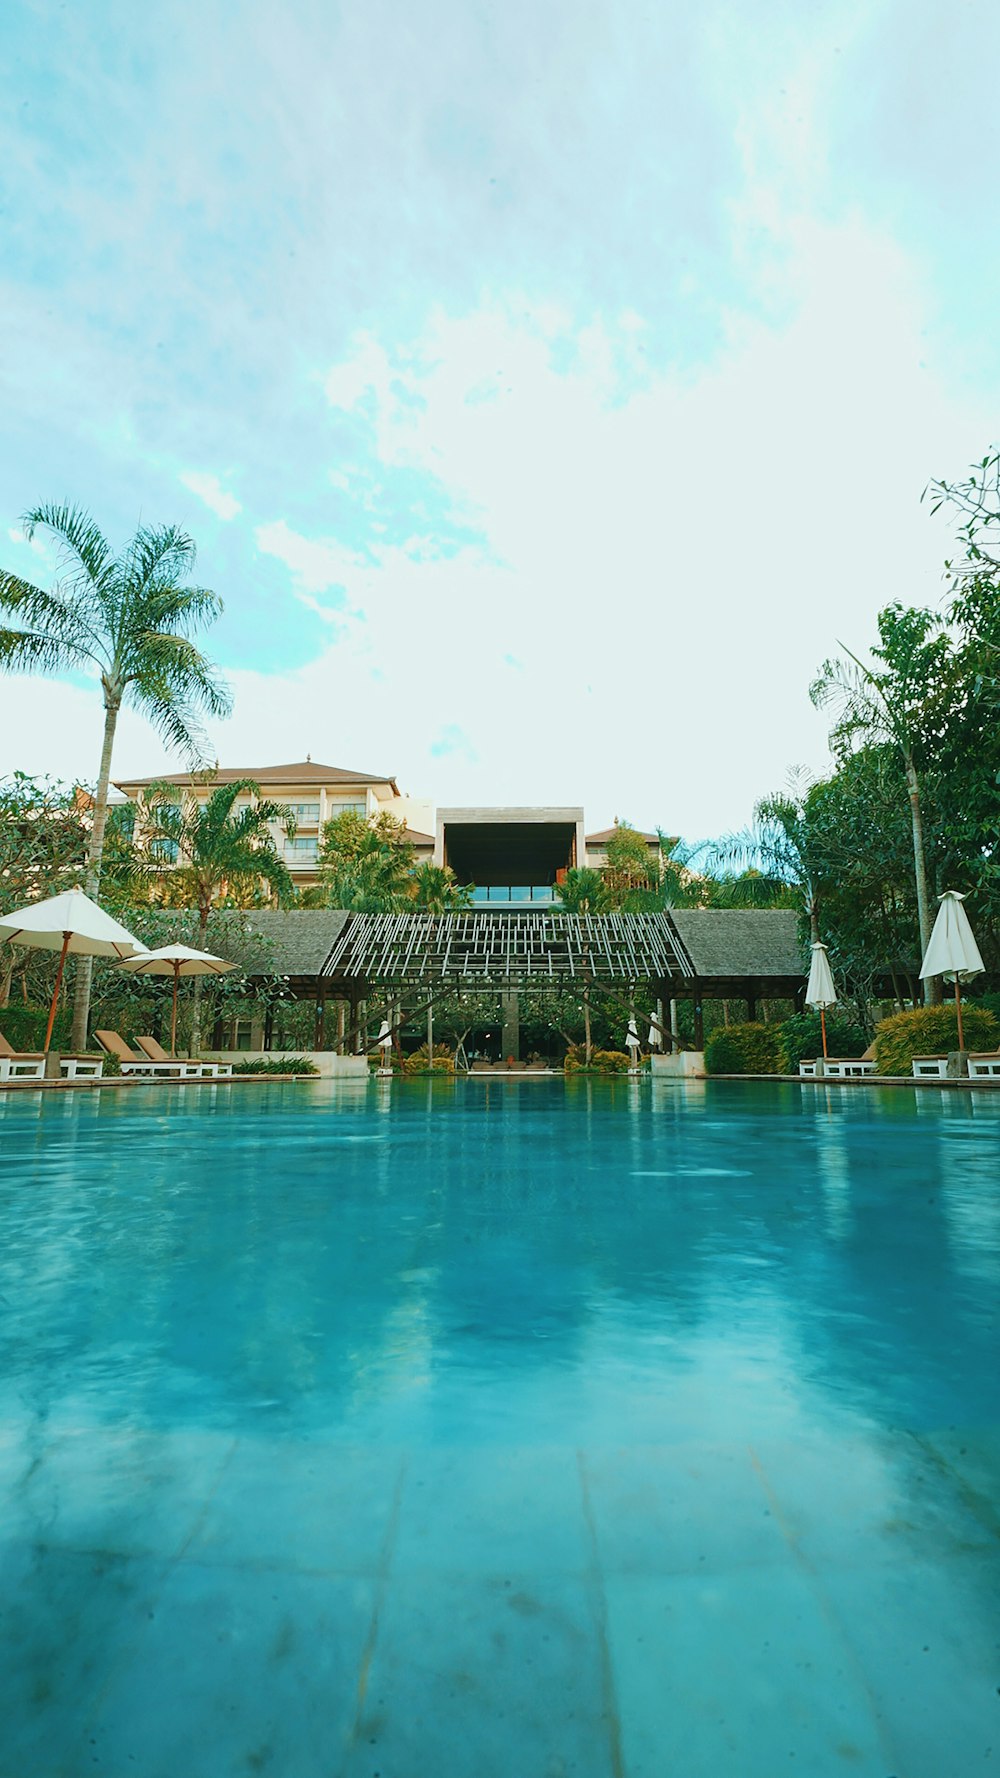 Blaues Schwimmbad in der Nähe von grünen Palmen während des Tages